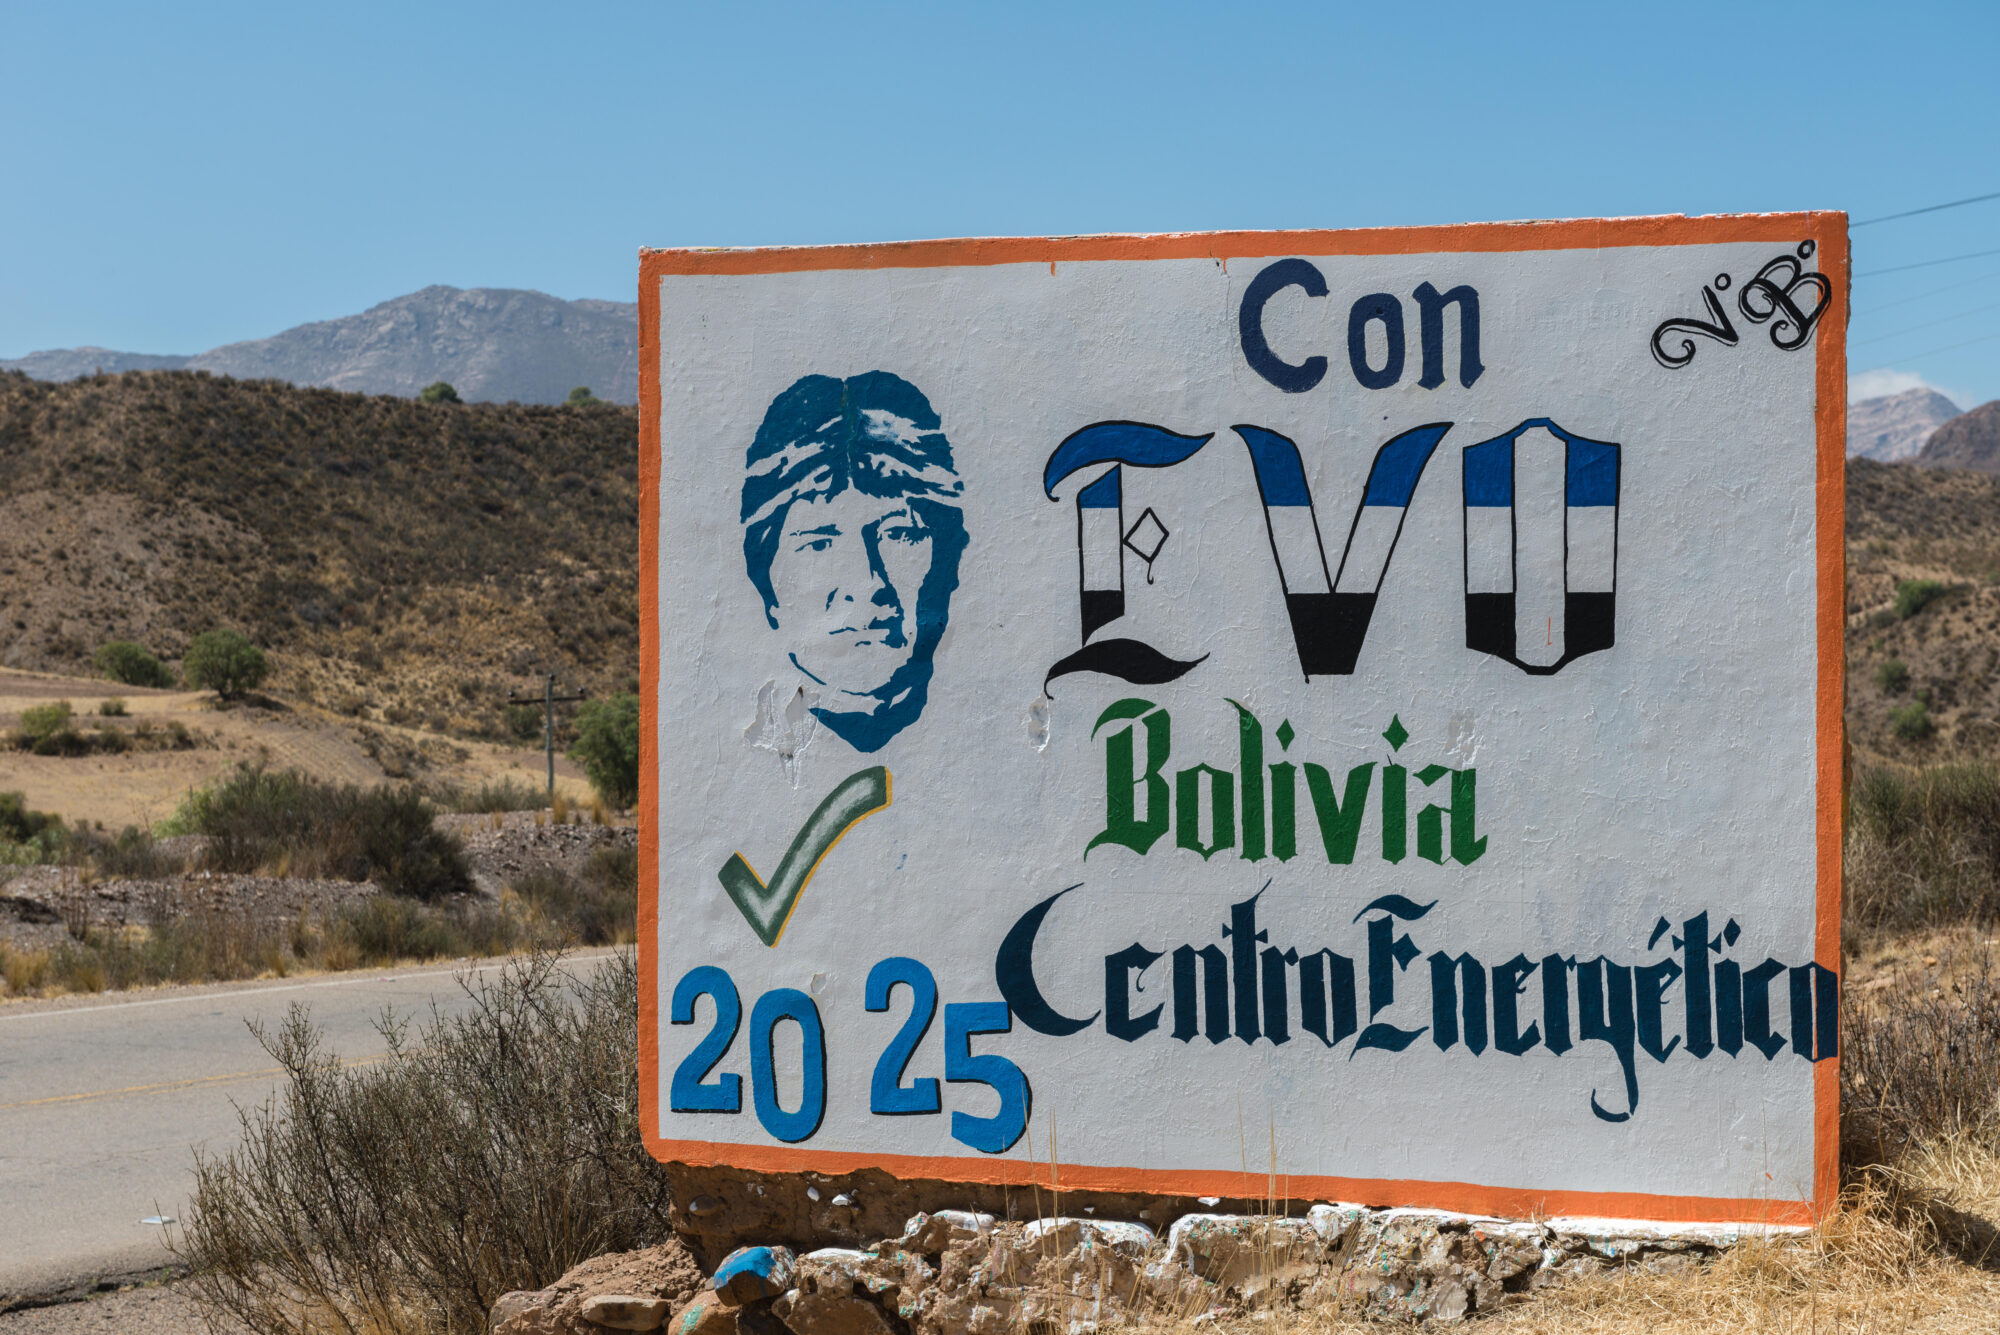 Cartel con la cara de Evo Morales y la leyenda "Con Evo Bolivia centro energético 2025"